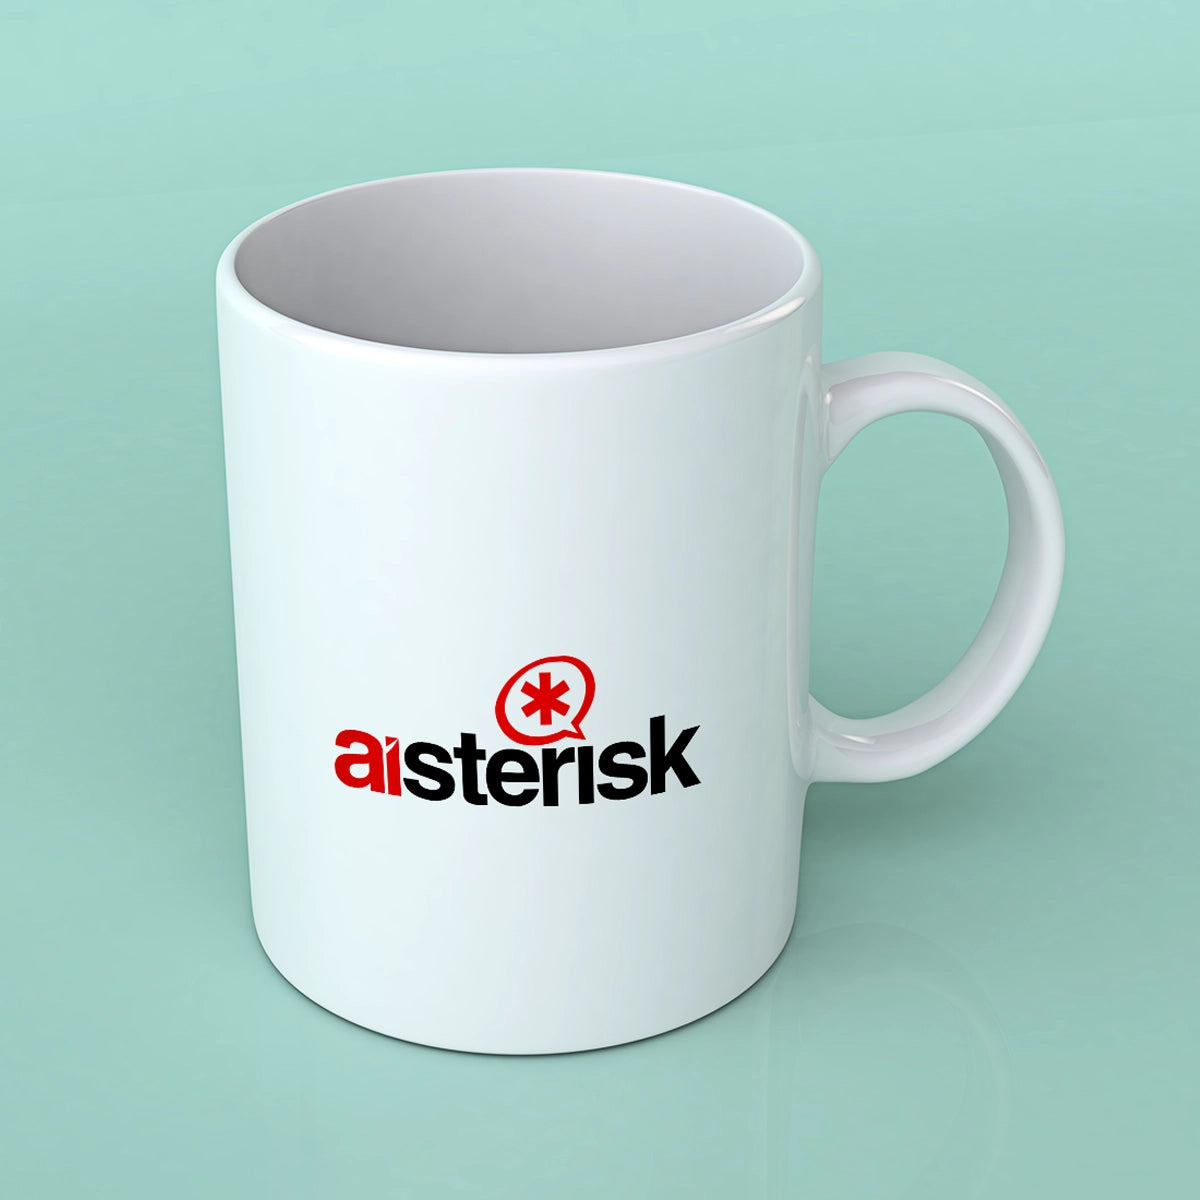 Aisterisk.com